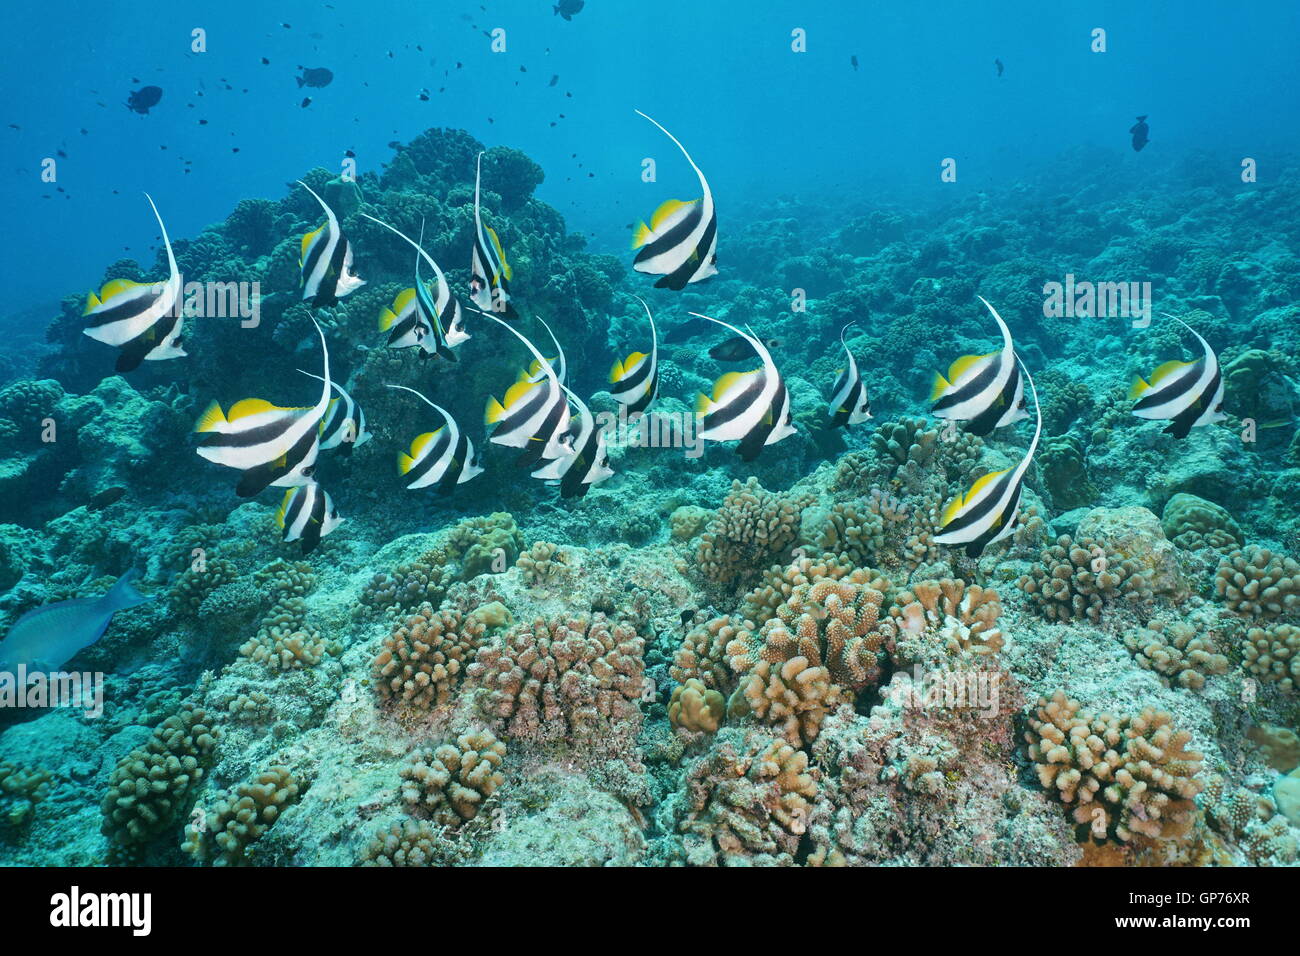 Poissons tropicaux pennant coralfish, Heniochus acuminatus, extra-sous-marine sur les récifs coralliens, Tikehau, l'océan Pacifique, Polynésie Française Banque D'Images